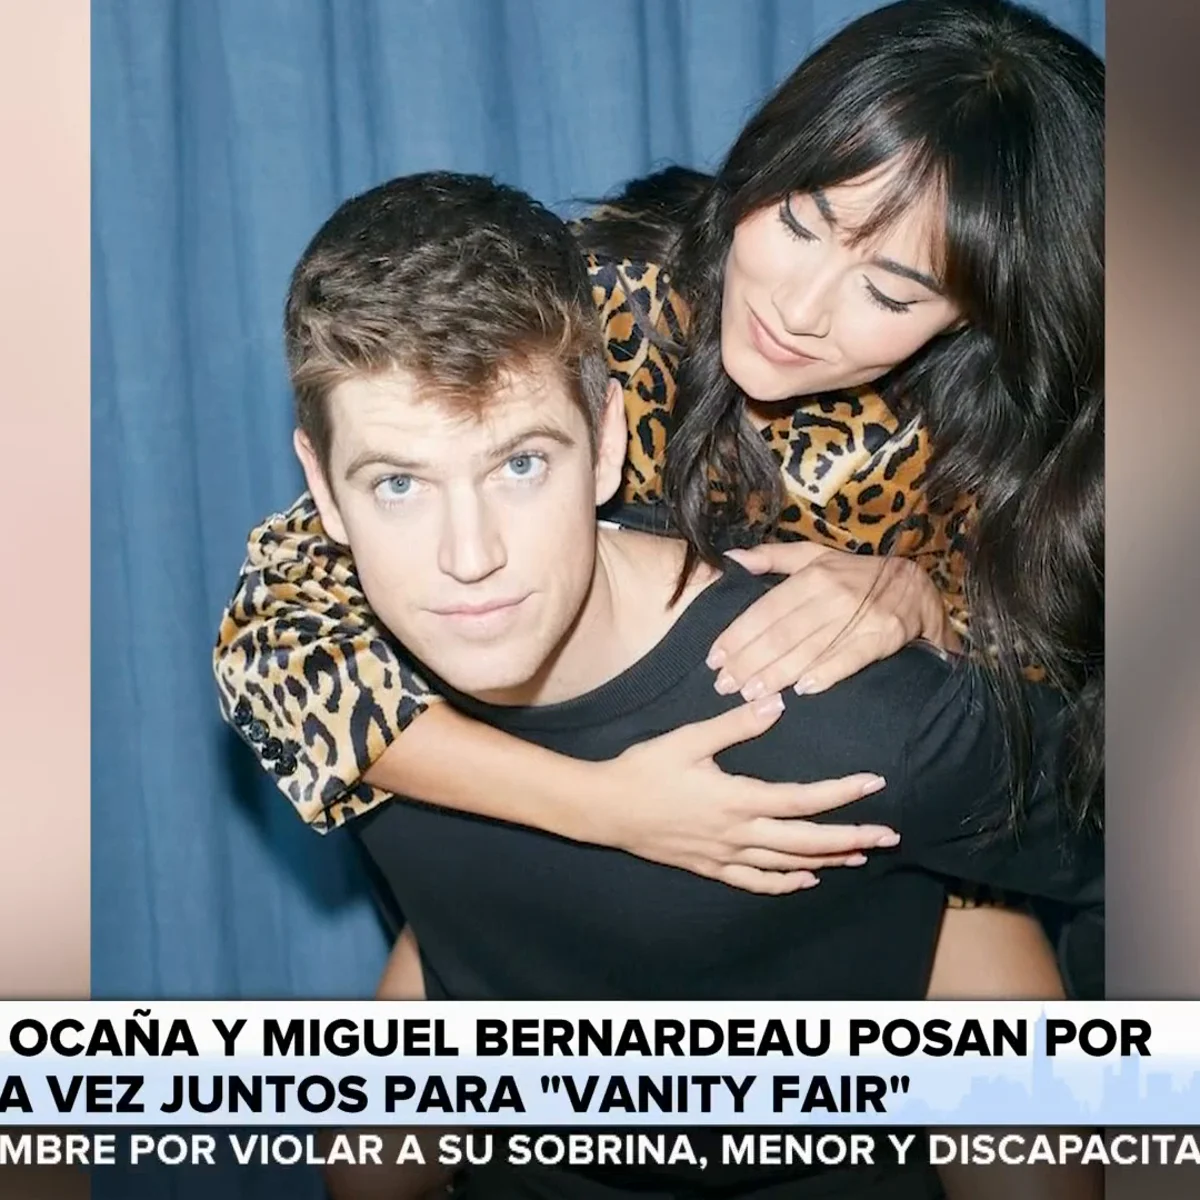 Aitana Ocaña confirma ¡por fin! su relación con el actor Miguel Bernardeau  - Stilo